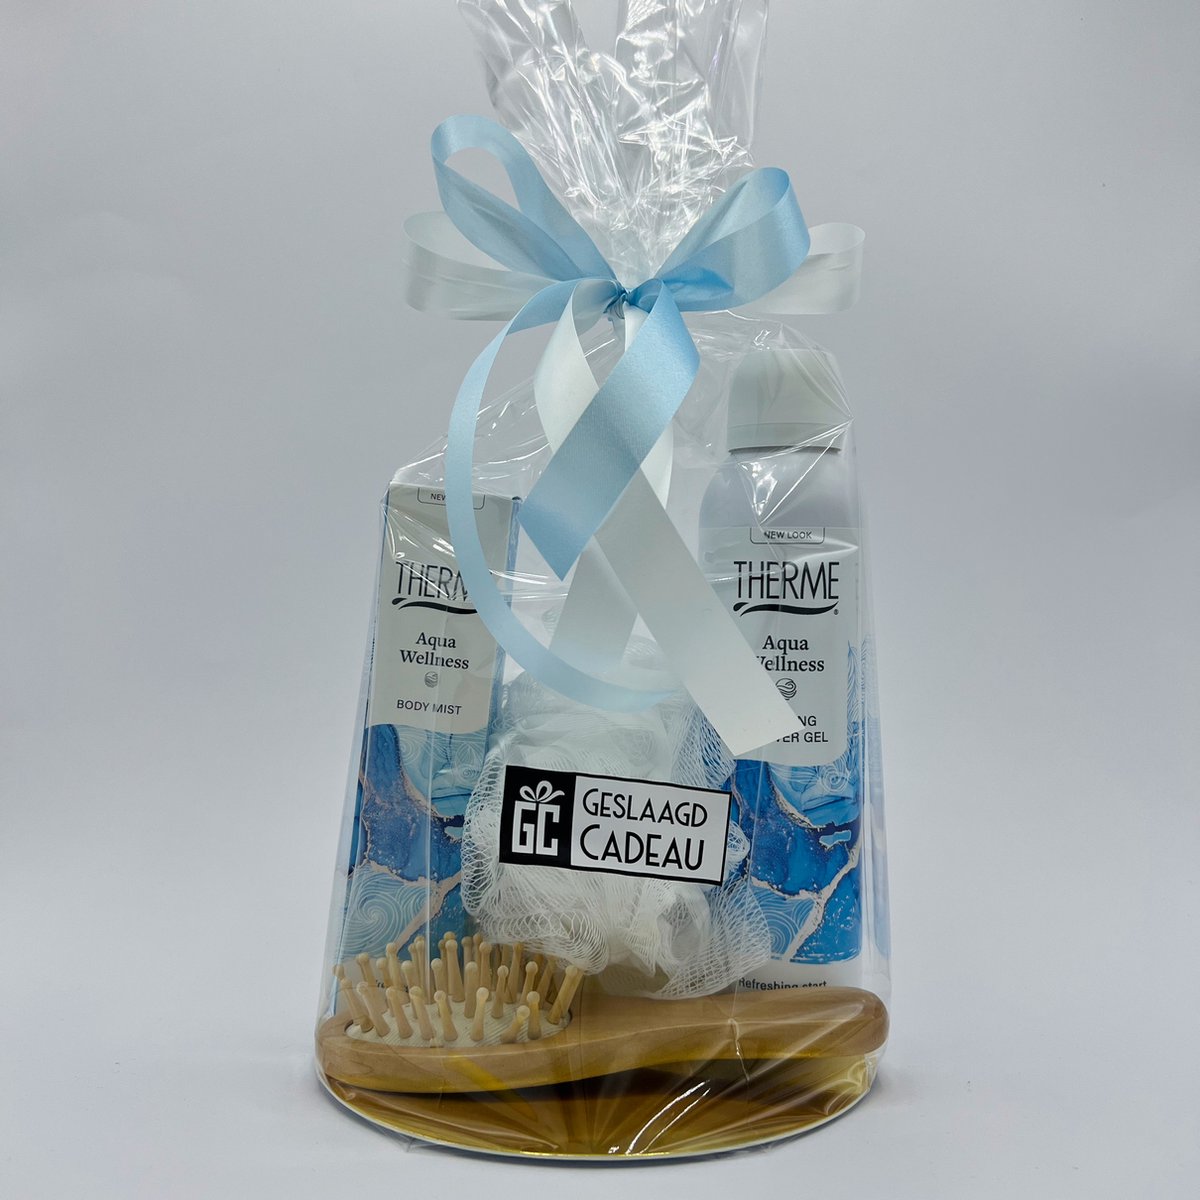 Cadeau voor vrouw Therme Aqua Wellness foaming shower gel - Therme body mist - kam en rugspons - Geschenkset vrouwen - verjaardag - 4 producten